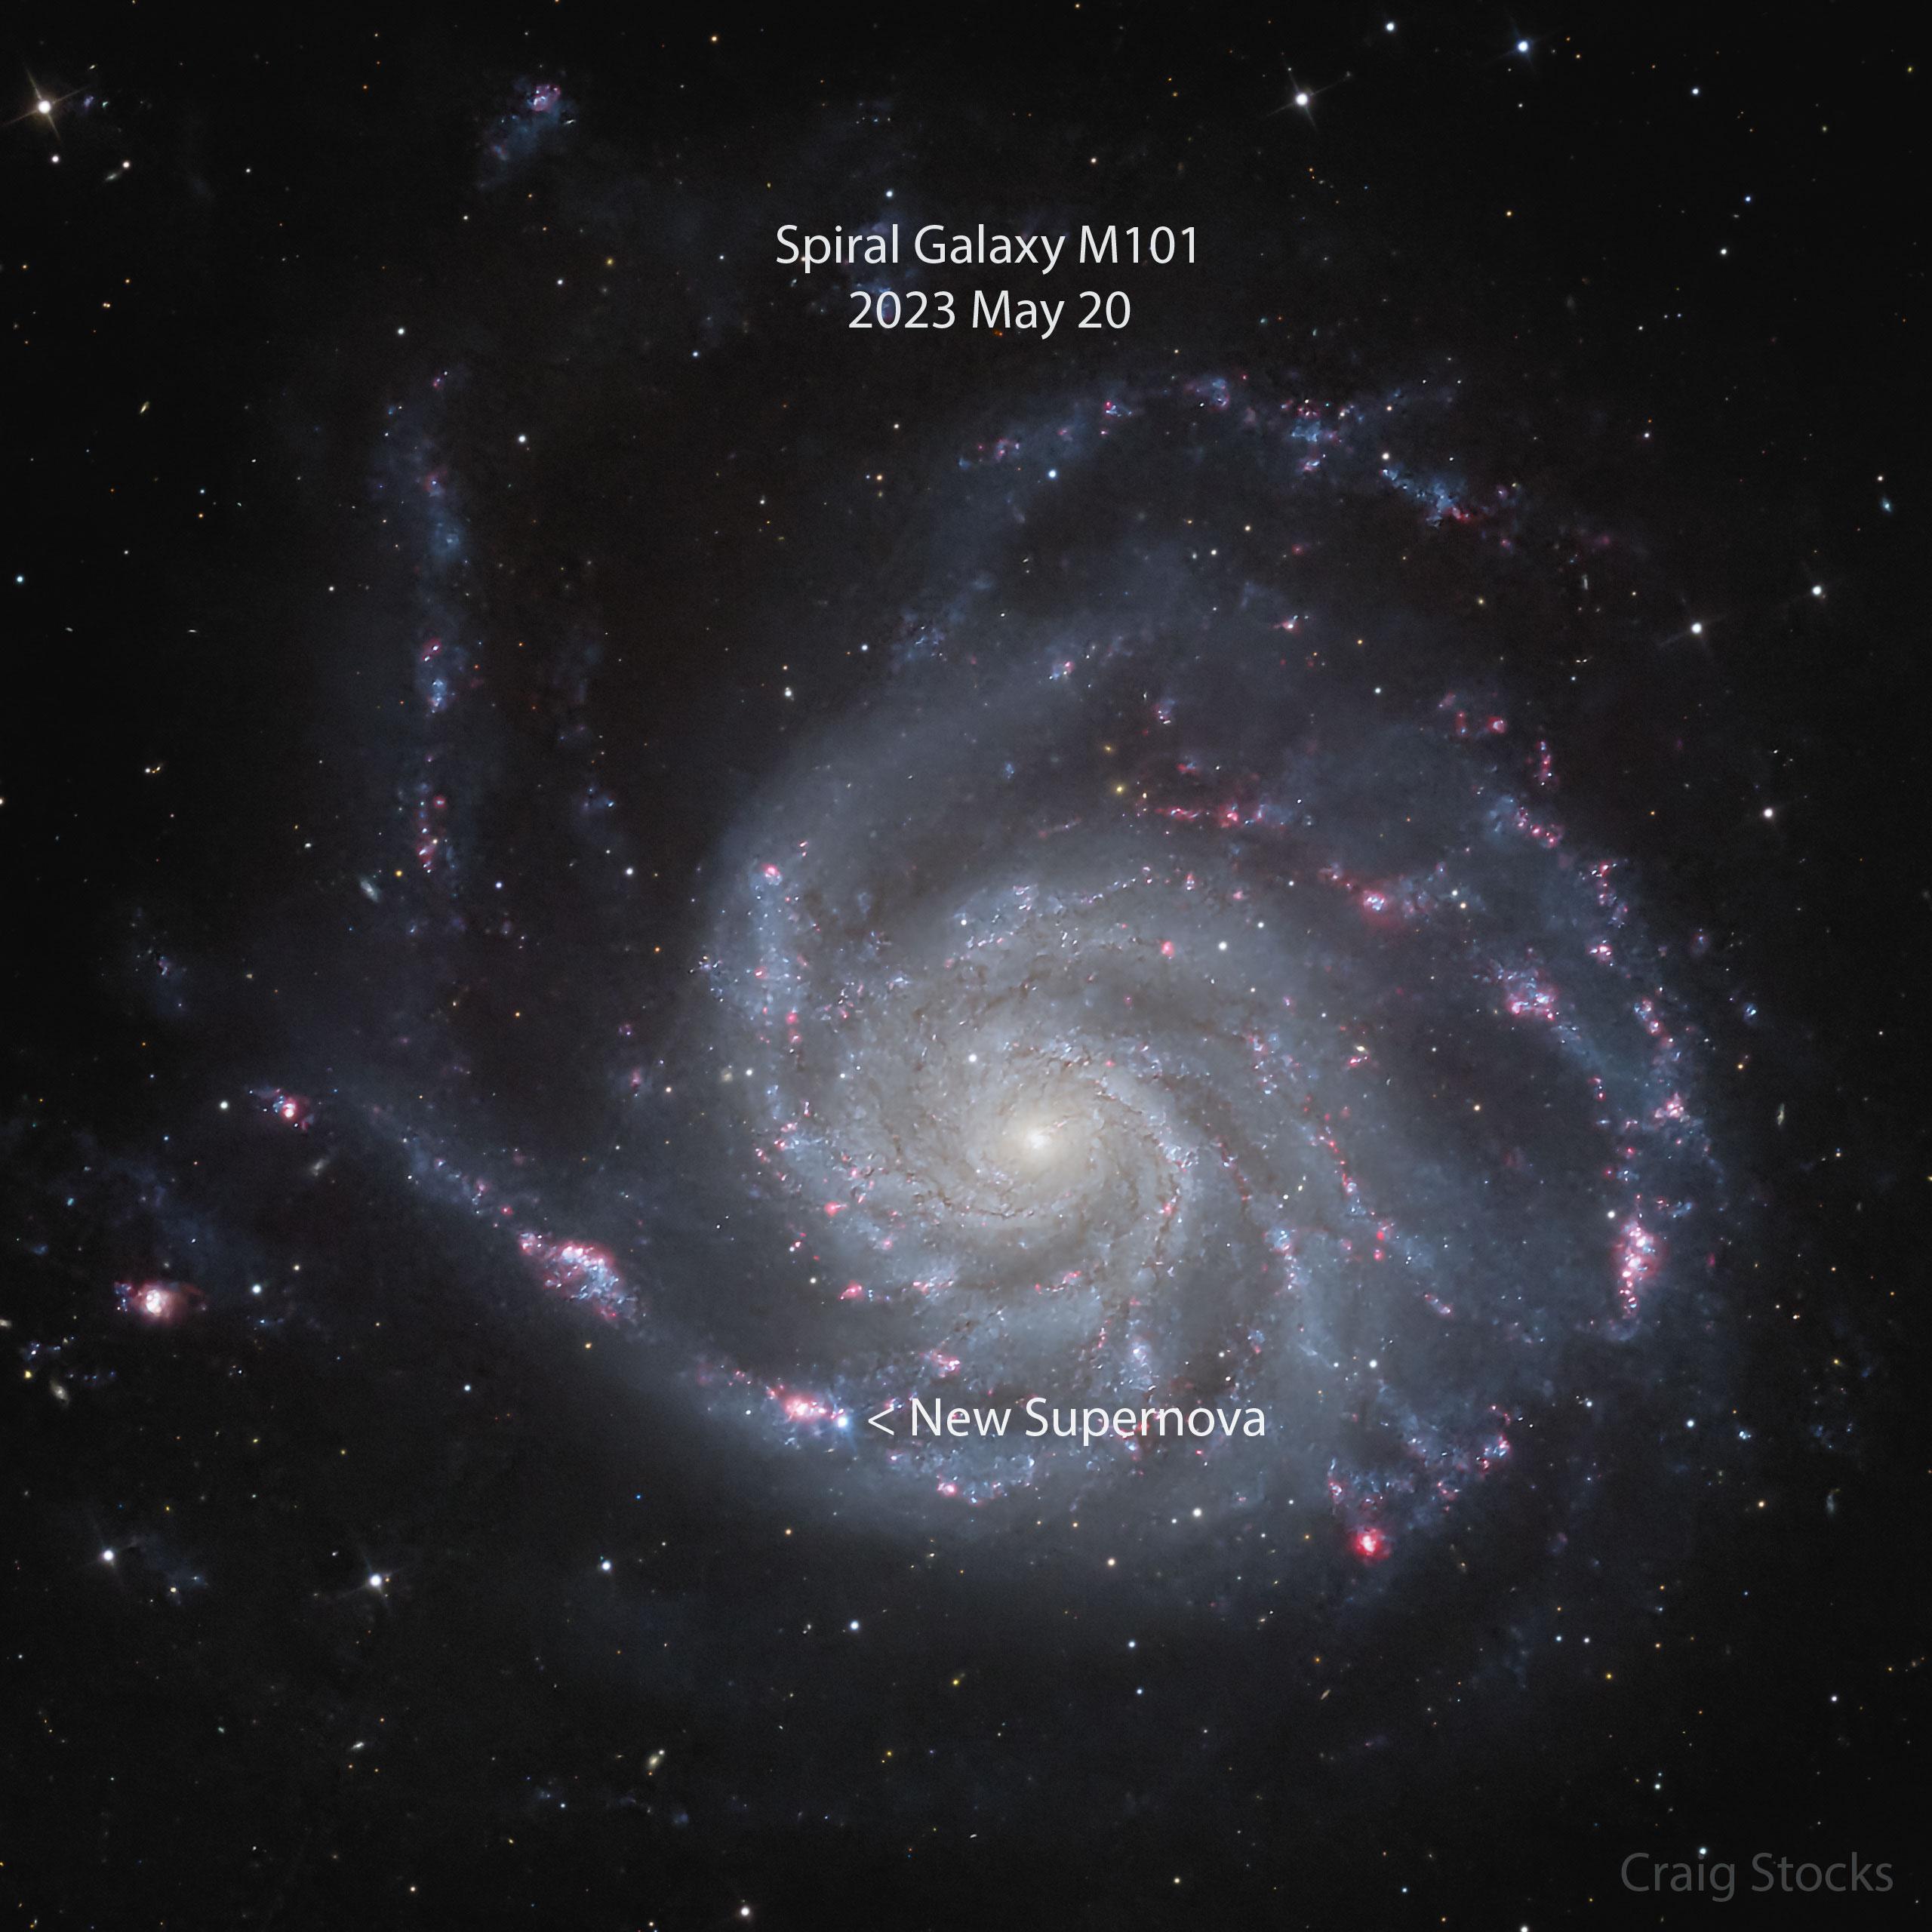 مجرّة حلزونيّة مترامية الأطراف ببقعةٍ ساطعة جديدة مرئيّة قرب اسفل الصورة. هذه البقعة هي مُستعر أعظم حديث الإكتشاف.